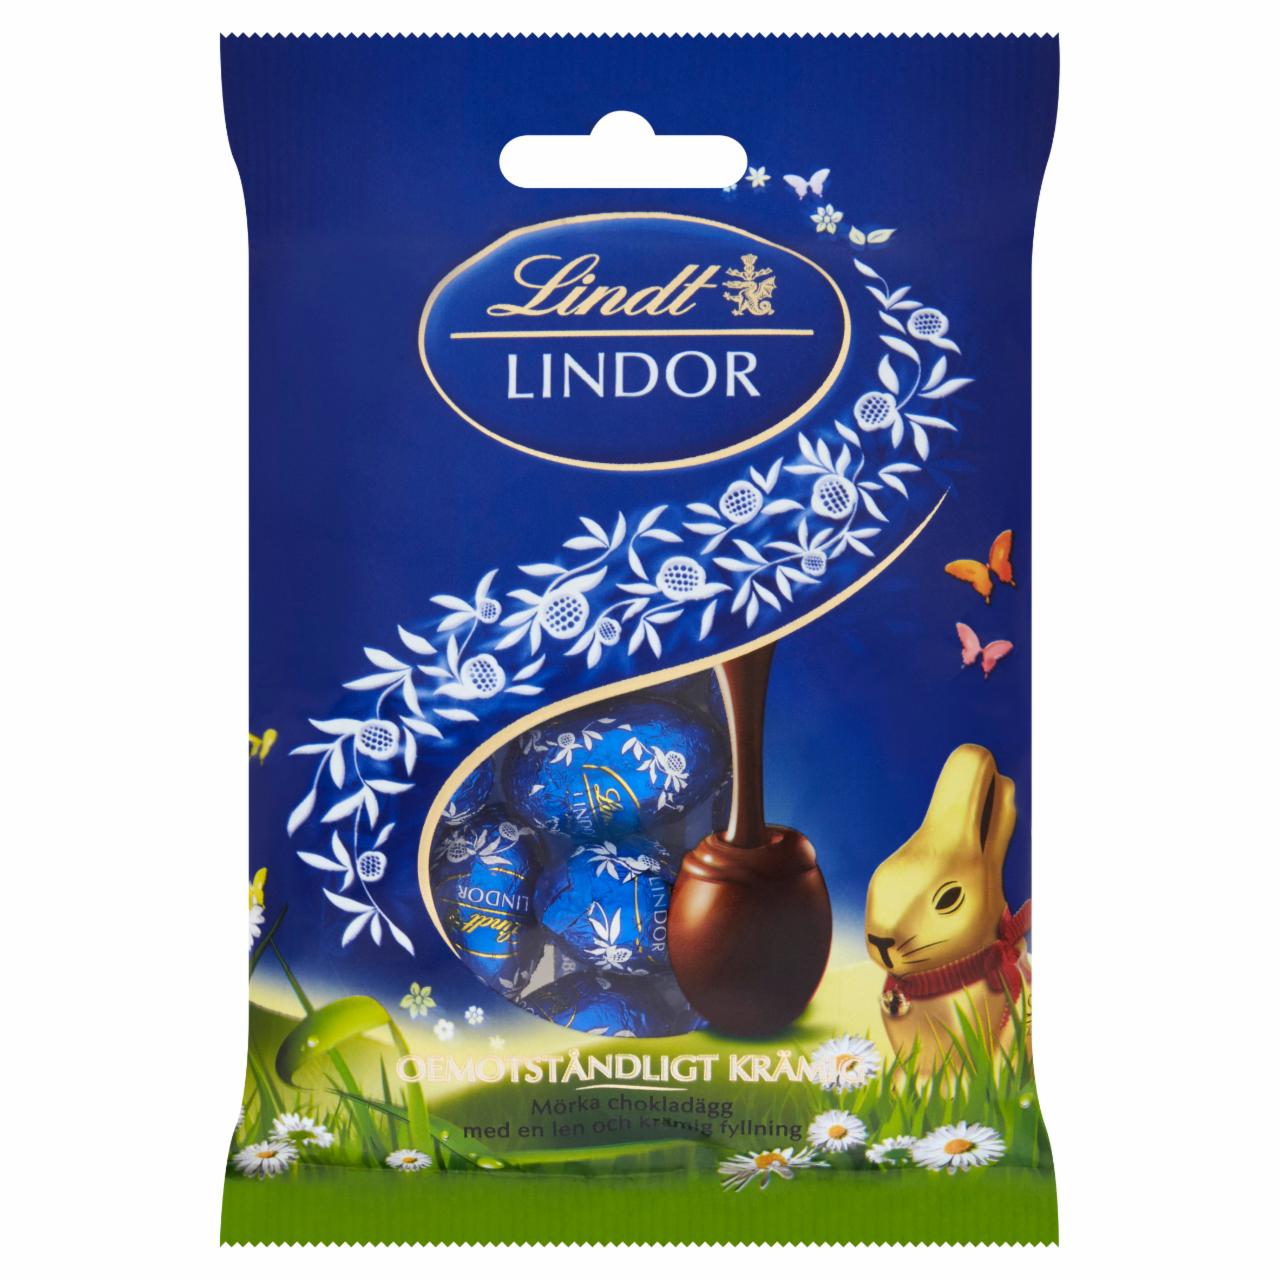 Képek - Lindt Lindor keserű csokoládé finom krémes töltelékkel 100 g